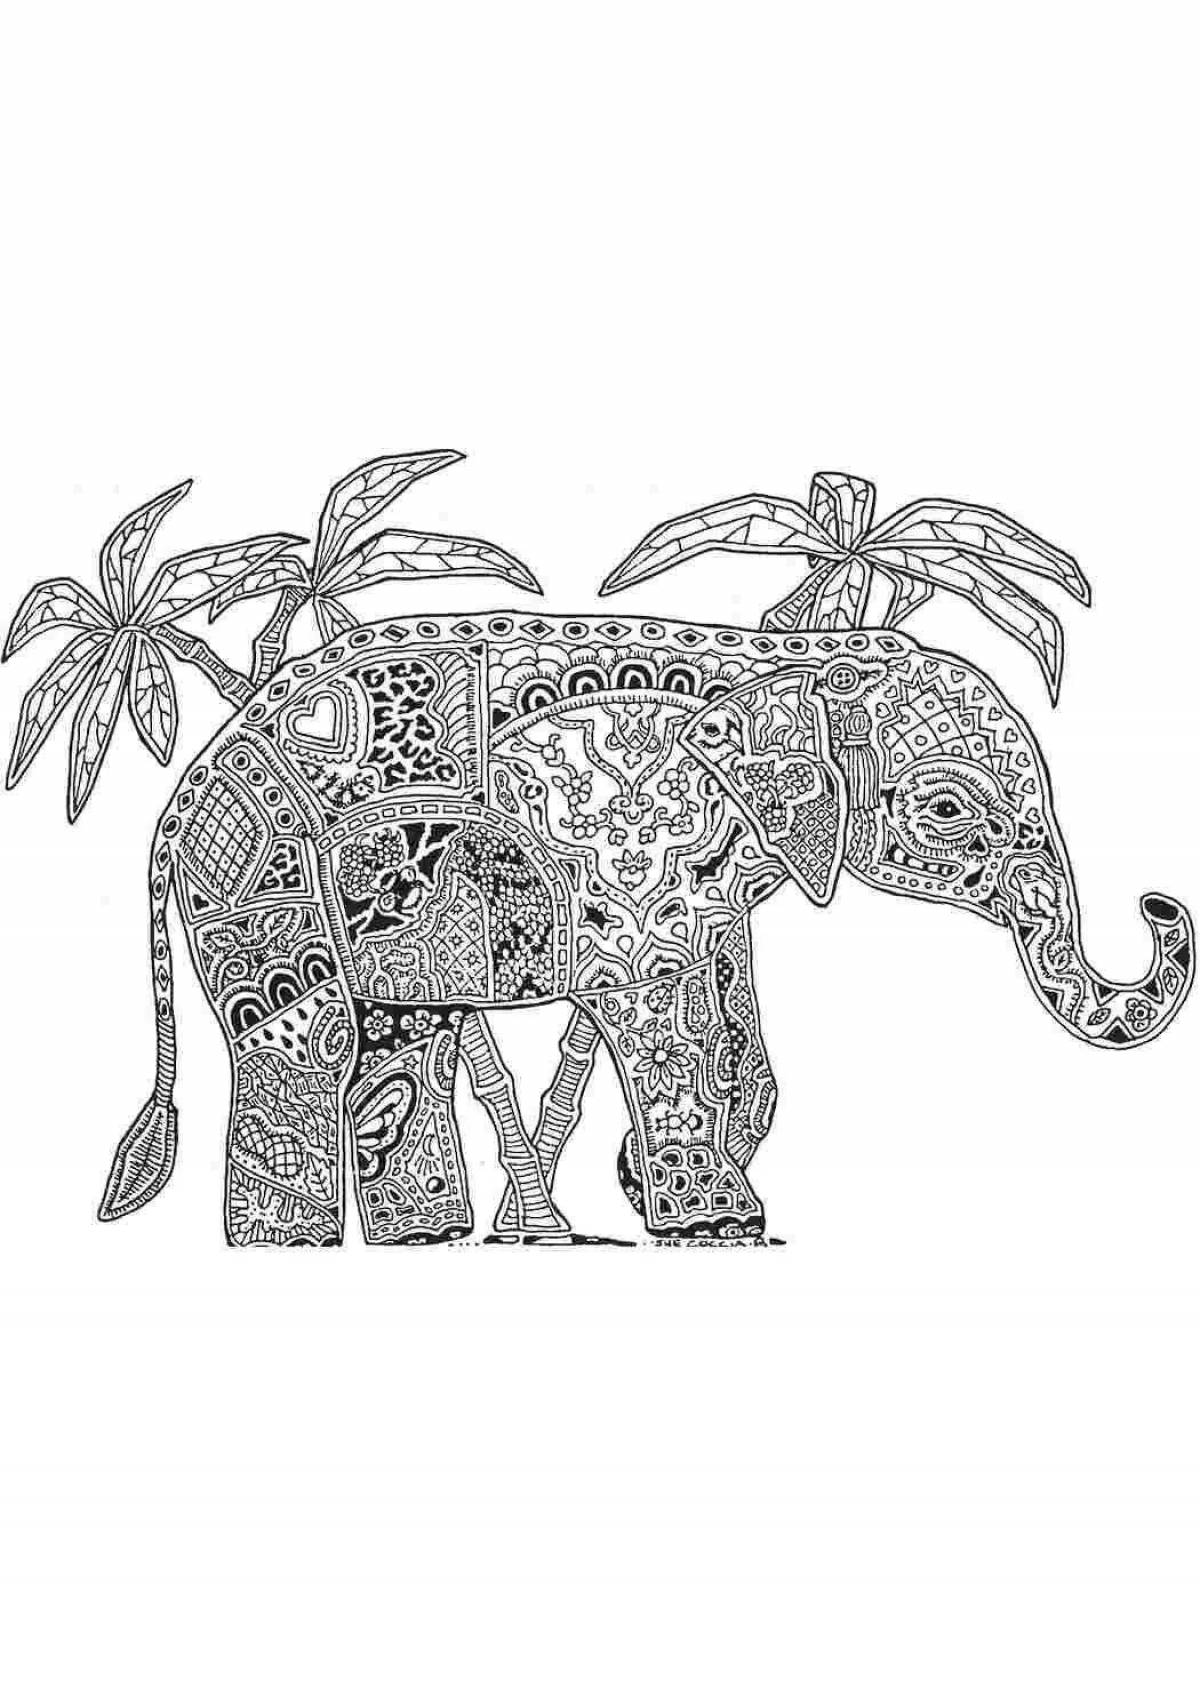 Забавная раскраска антистрессовый слон